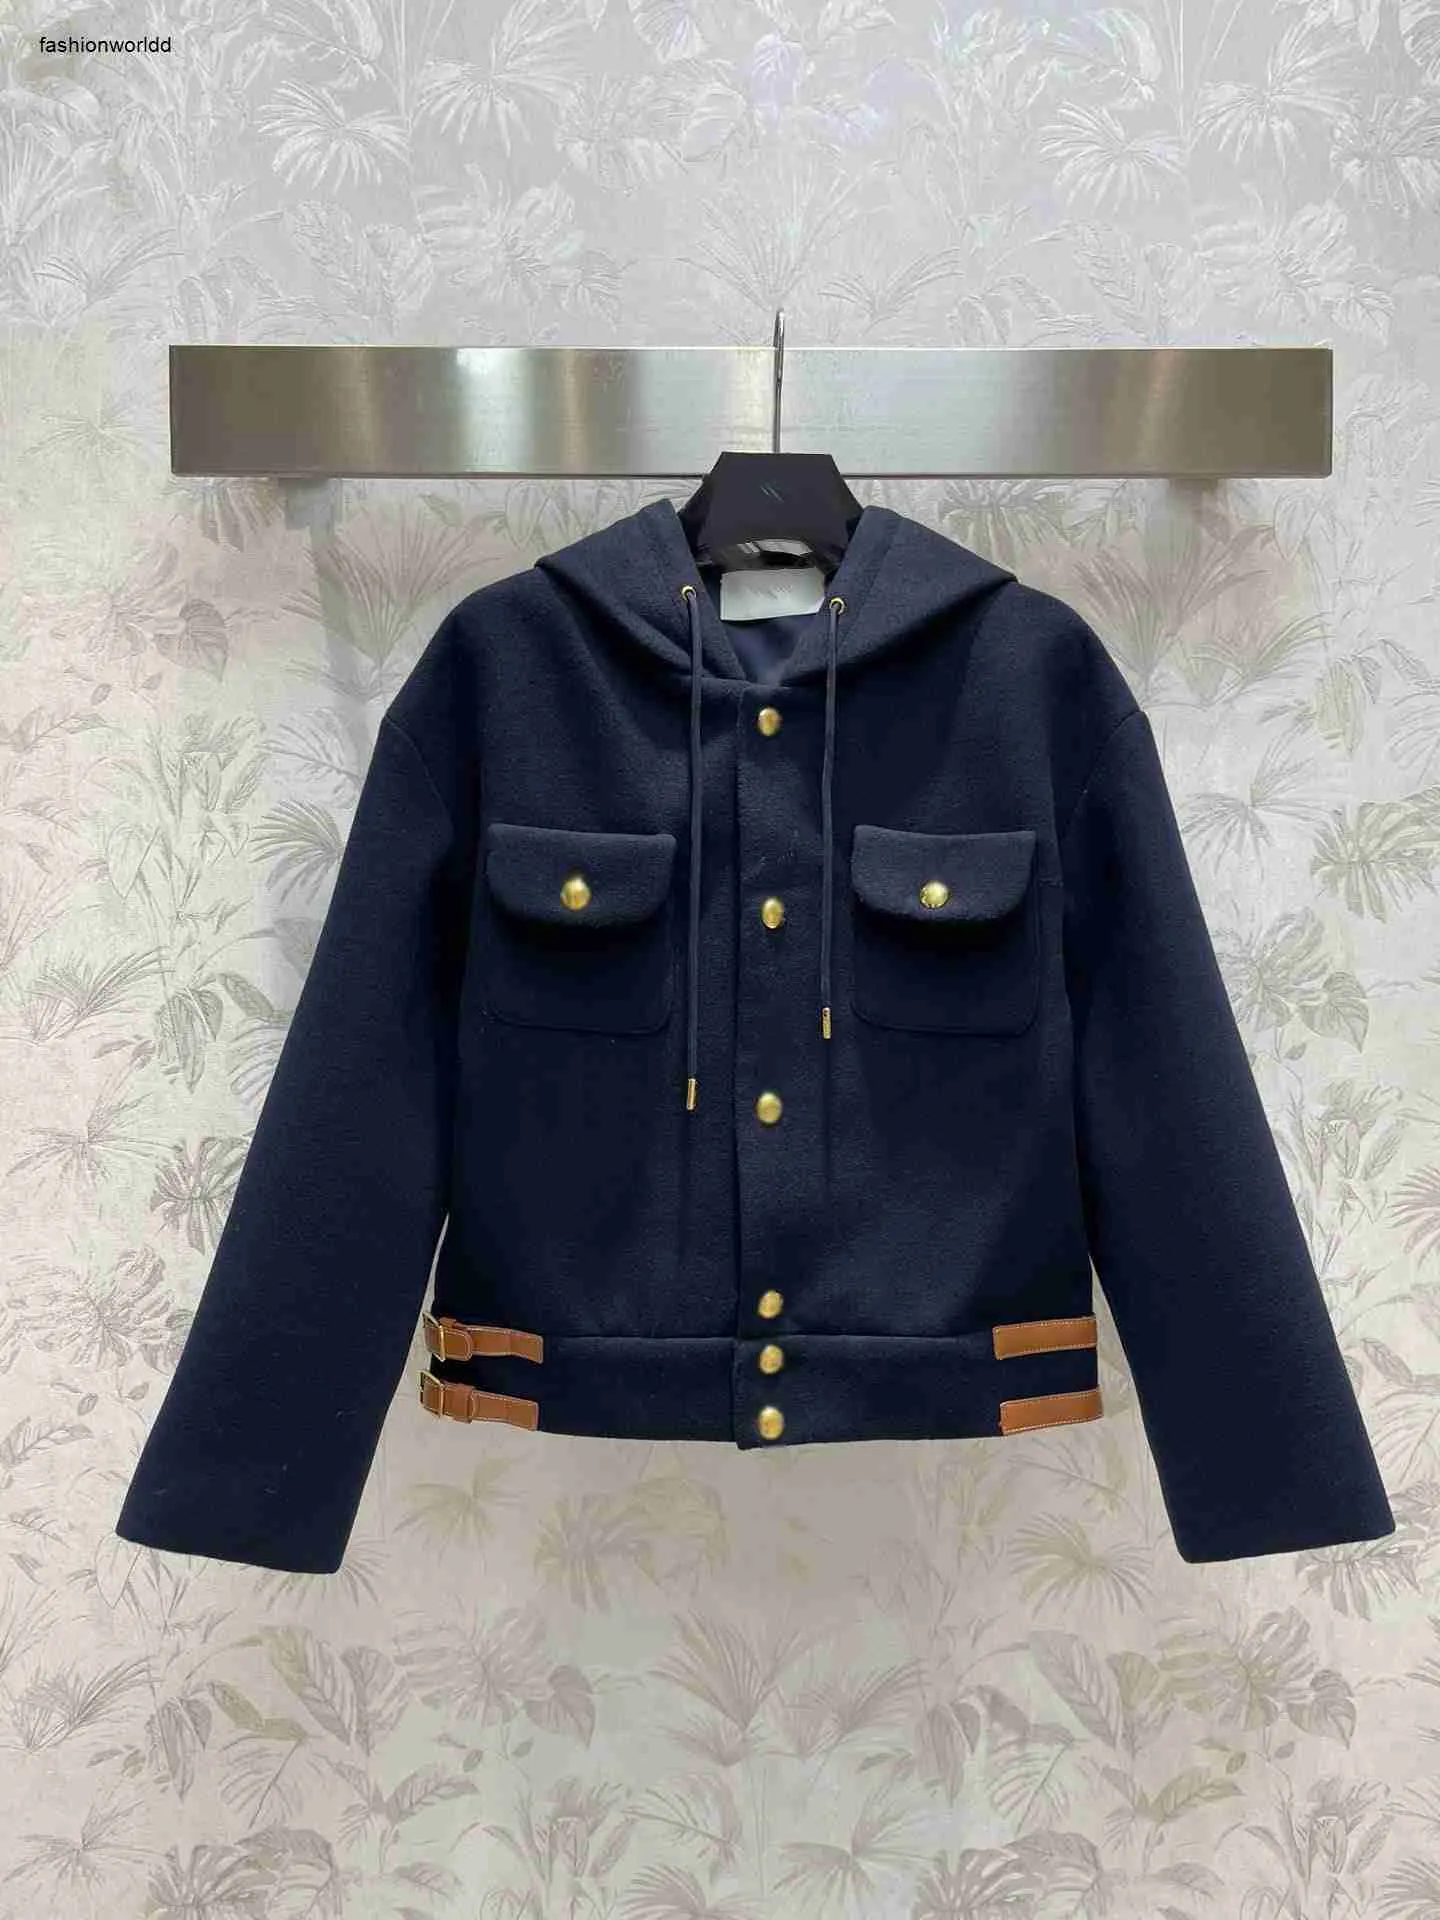 브랜드 재킷 여성 긴 슬리브 재킷 가을과 겨울 뉴 캐시미어 짧은 재킷 디자이너 의류 패션 및 레저. 11 Worldd